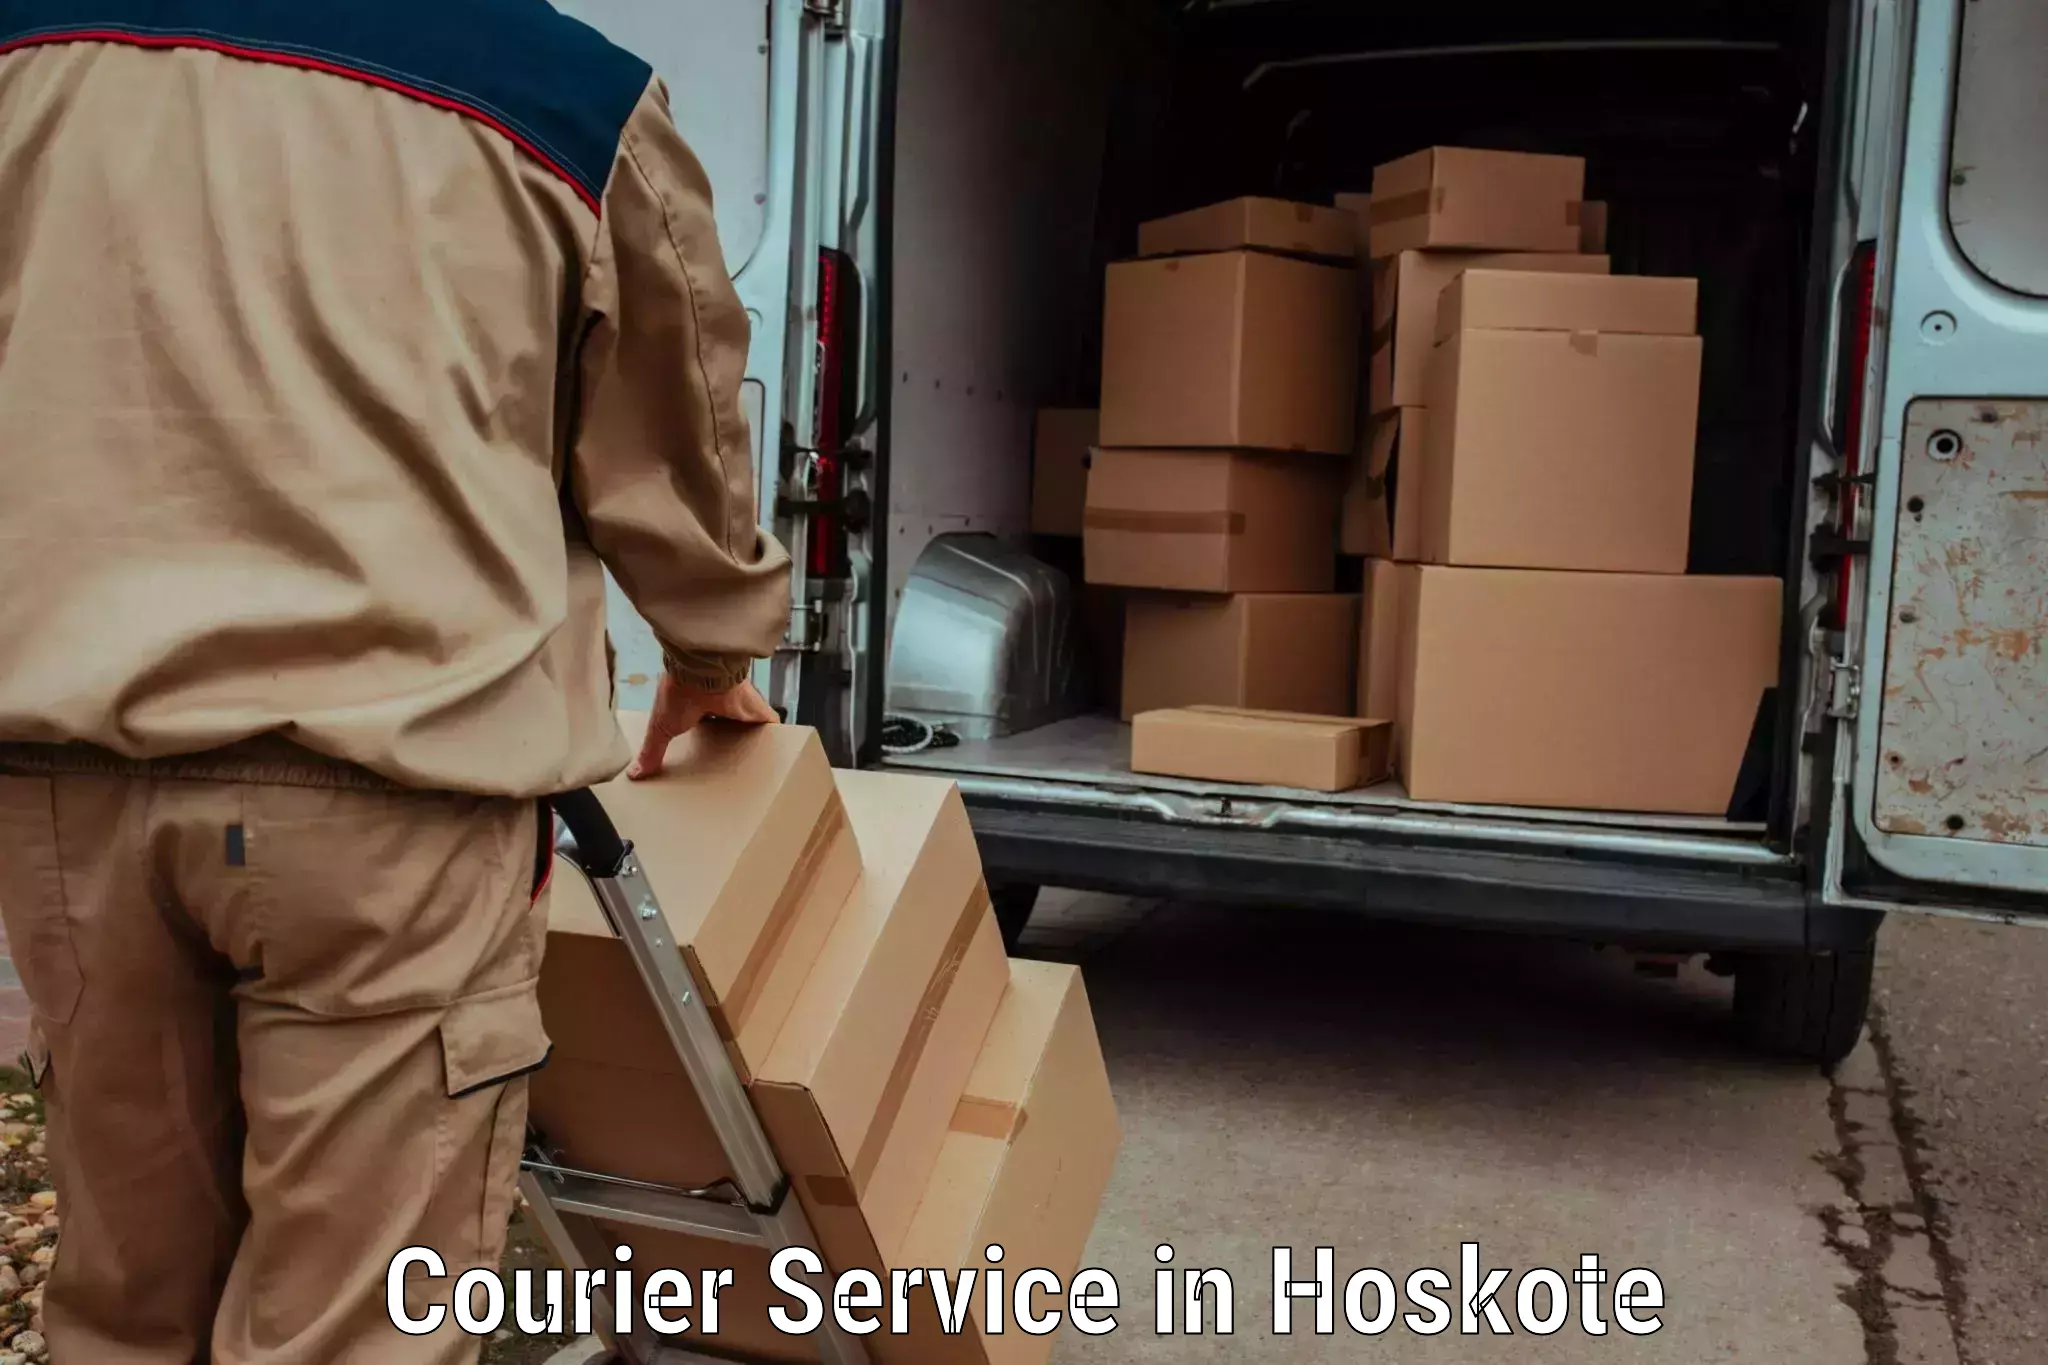 Premium delivery services in Hoskote